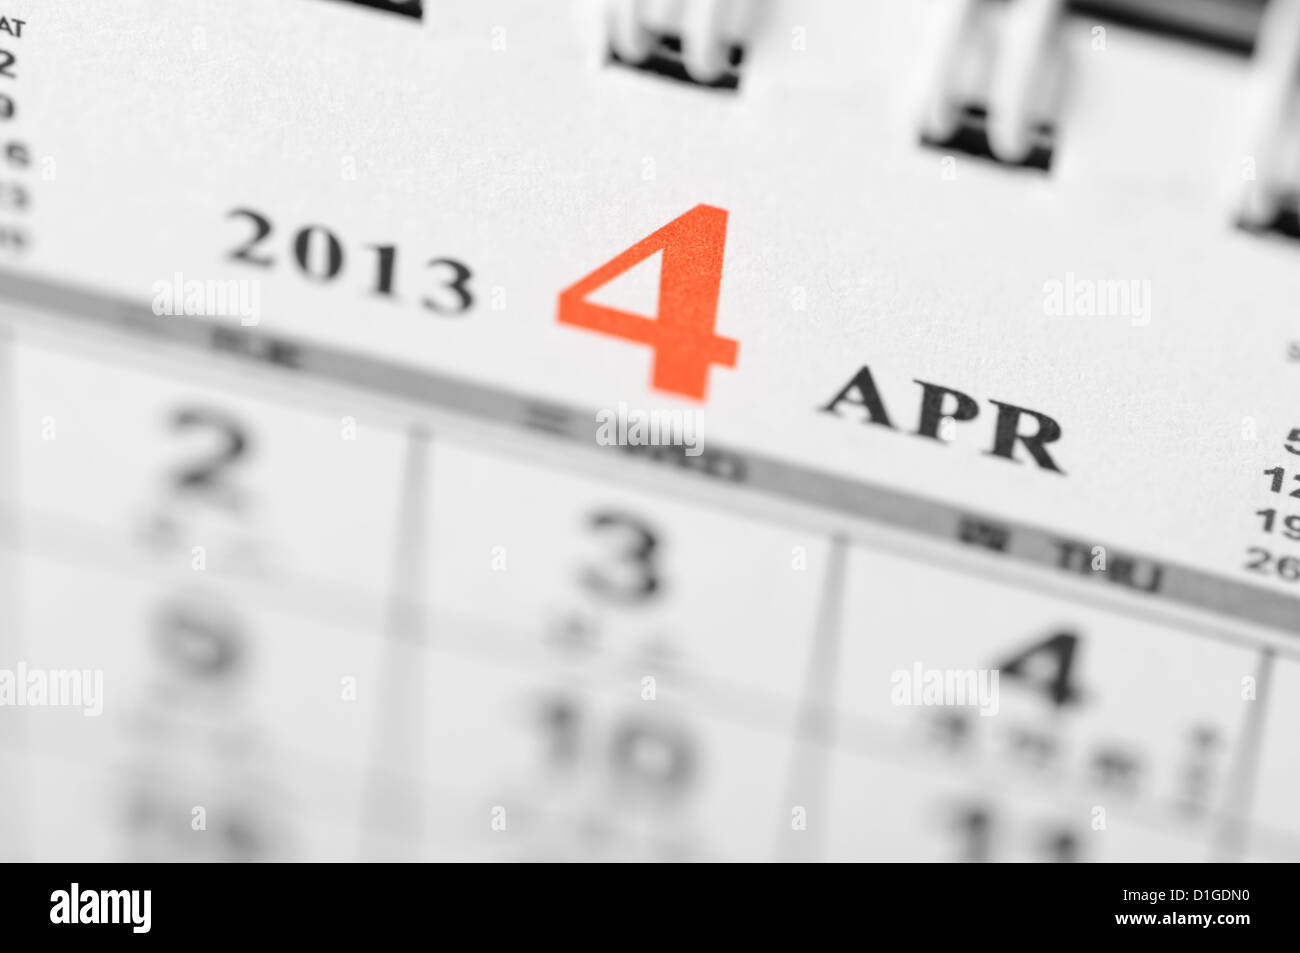 April of 2013 calendar Stock Photo